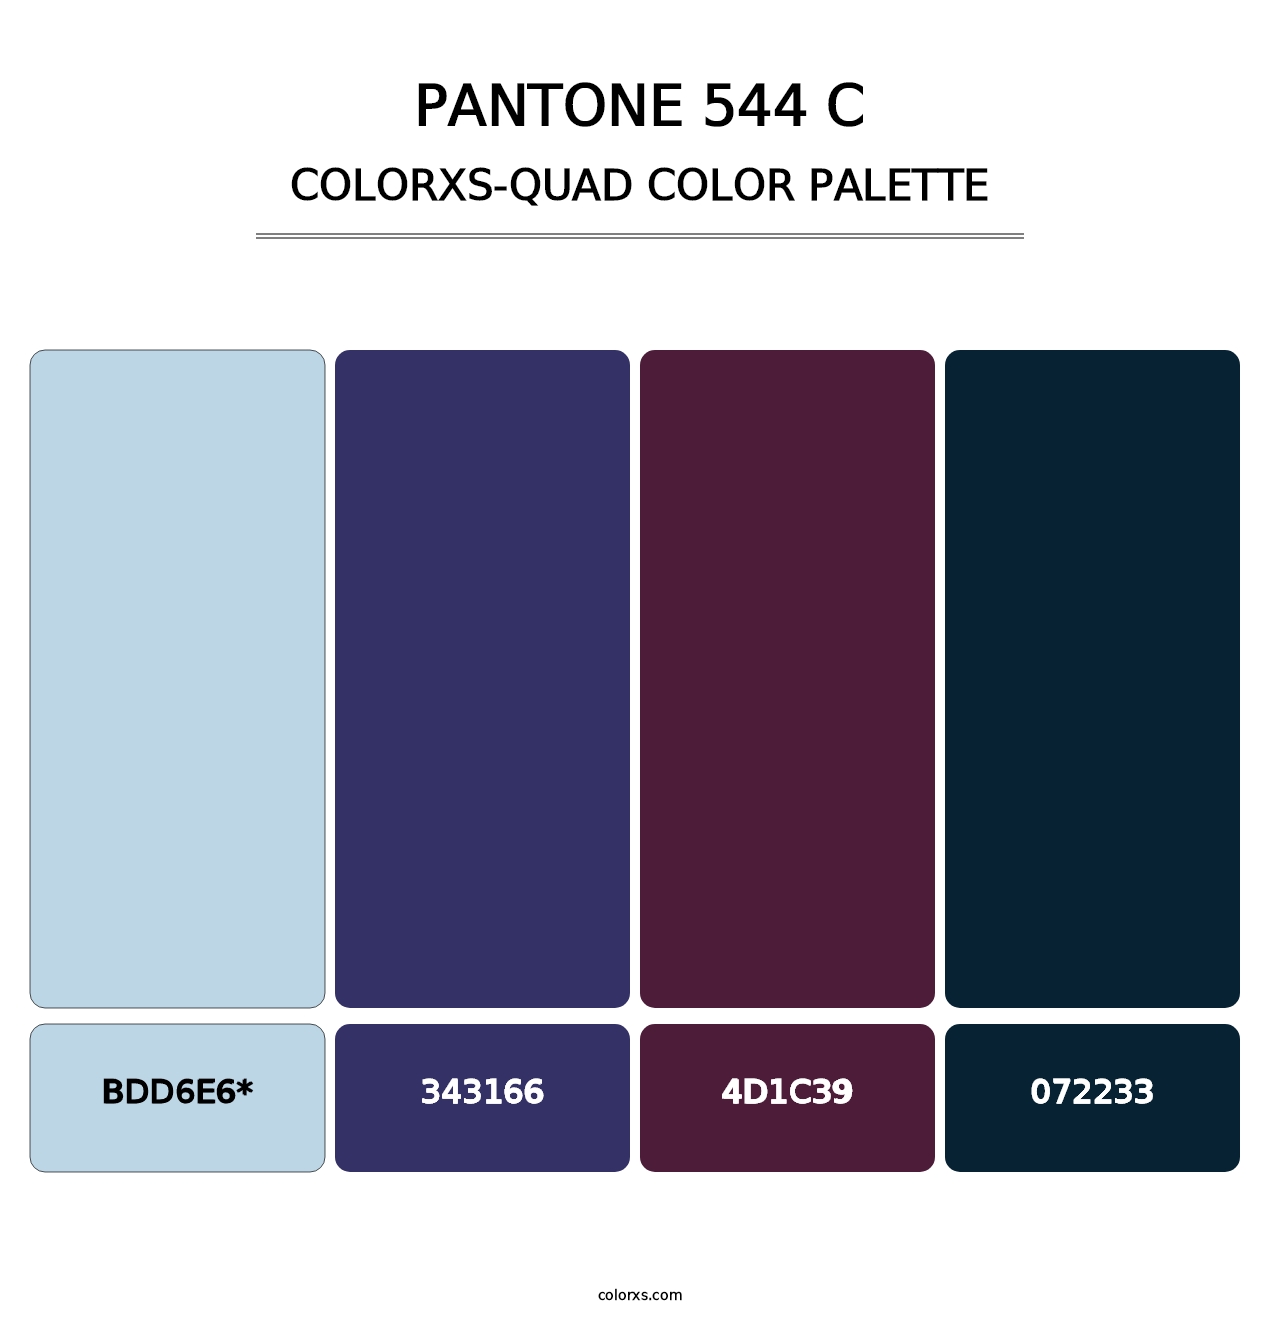 PANTONE 544 C - Colorxs Quad Palette